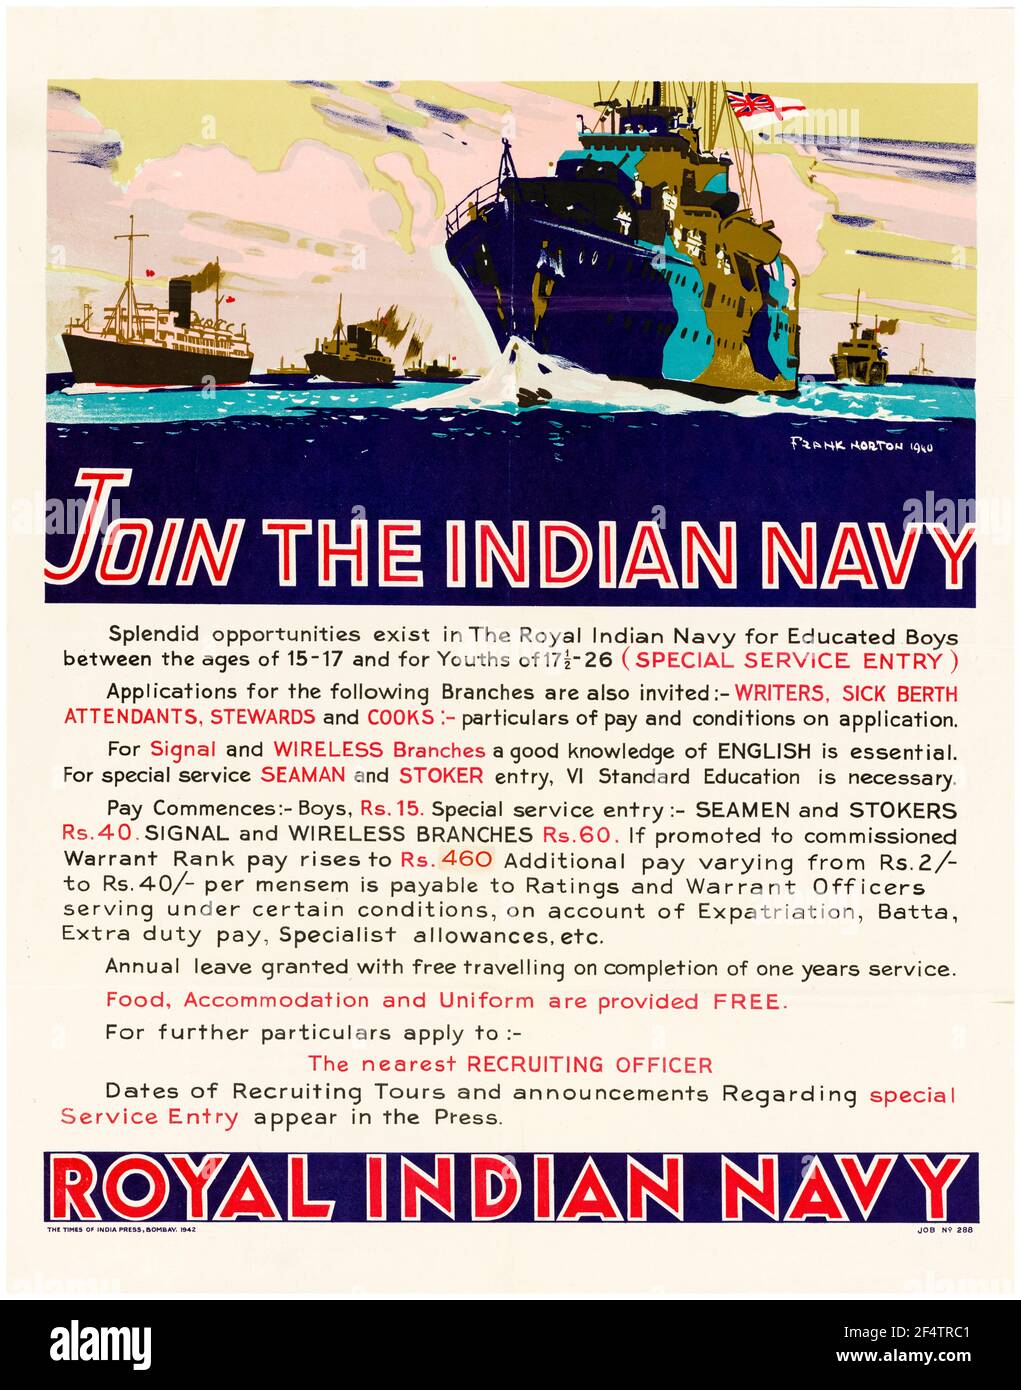 Indian, affiche de recrutement des Forces de la Seconde Guerre mondiale, Joignez-vous à The, Marine royale indienne, affiche, 1942-1945 Banque D'Images